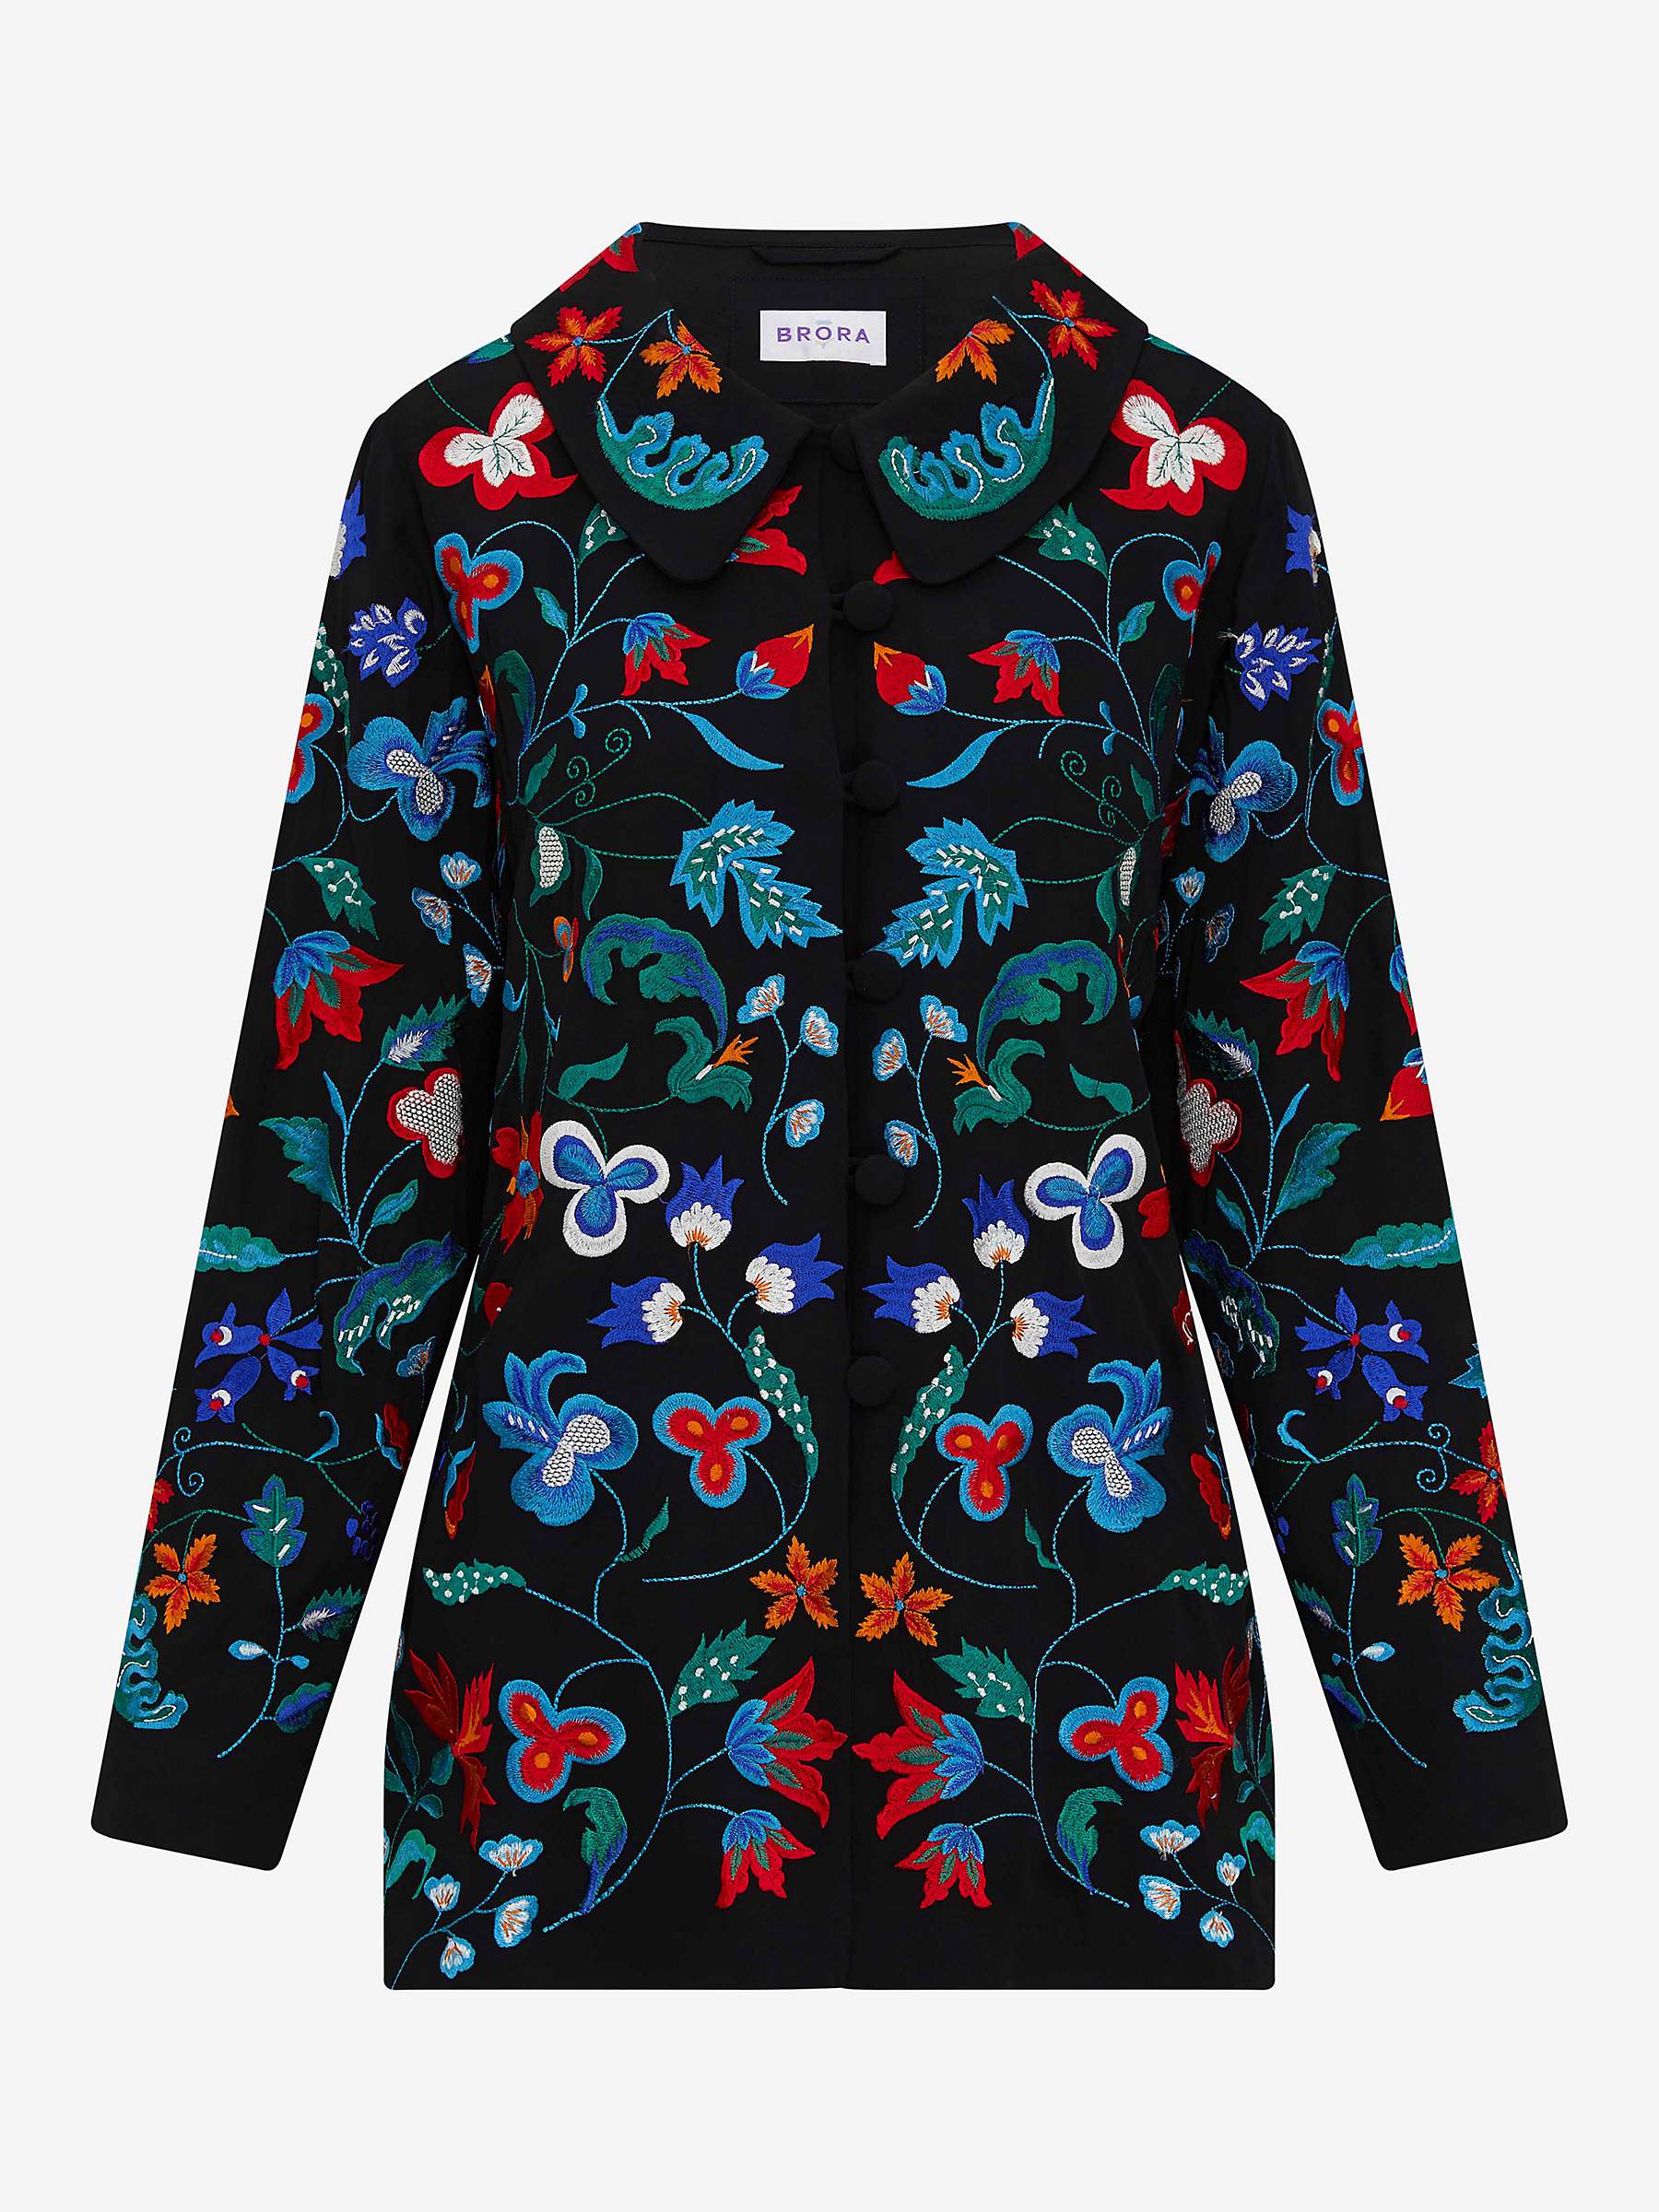 Buy Brora Folk Embroidered Jacket, Black/Multi Online at johnlewis.com